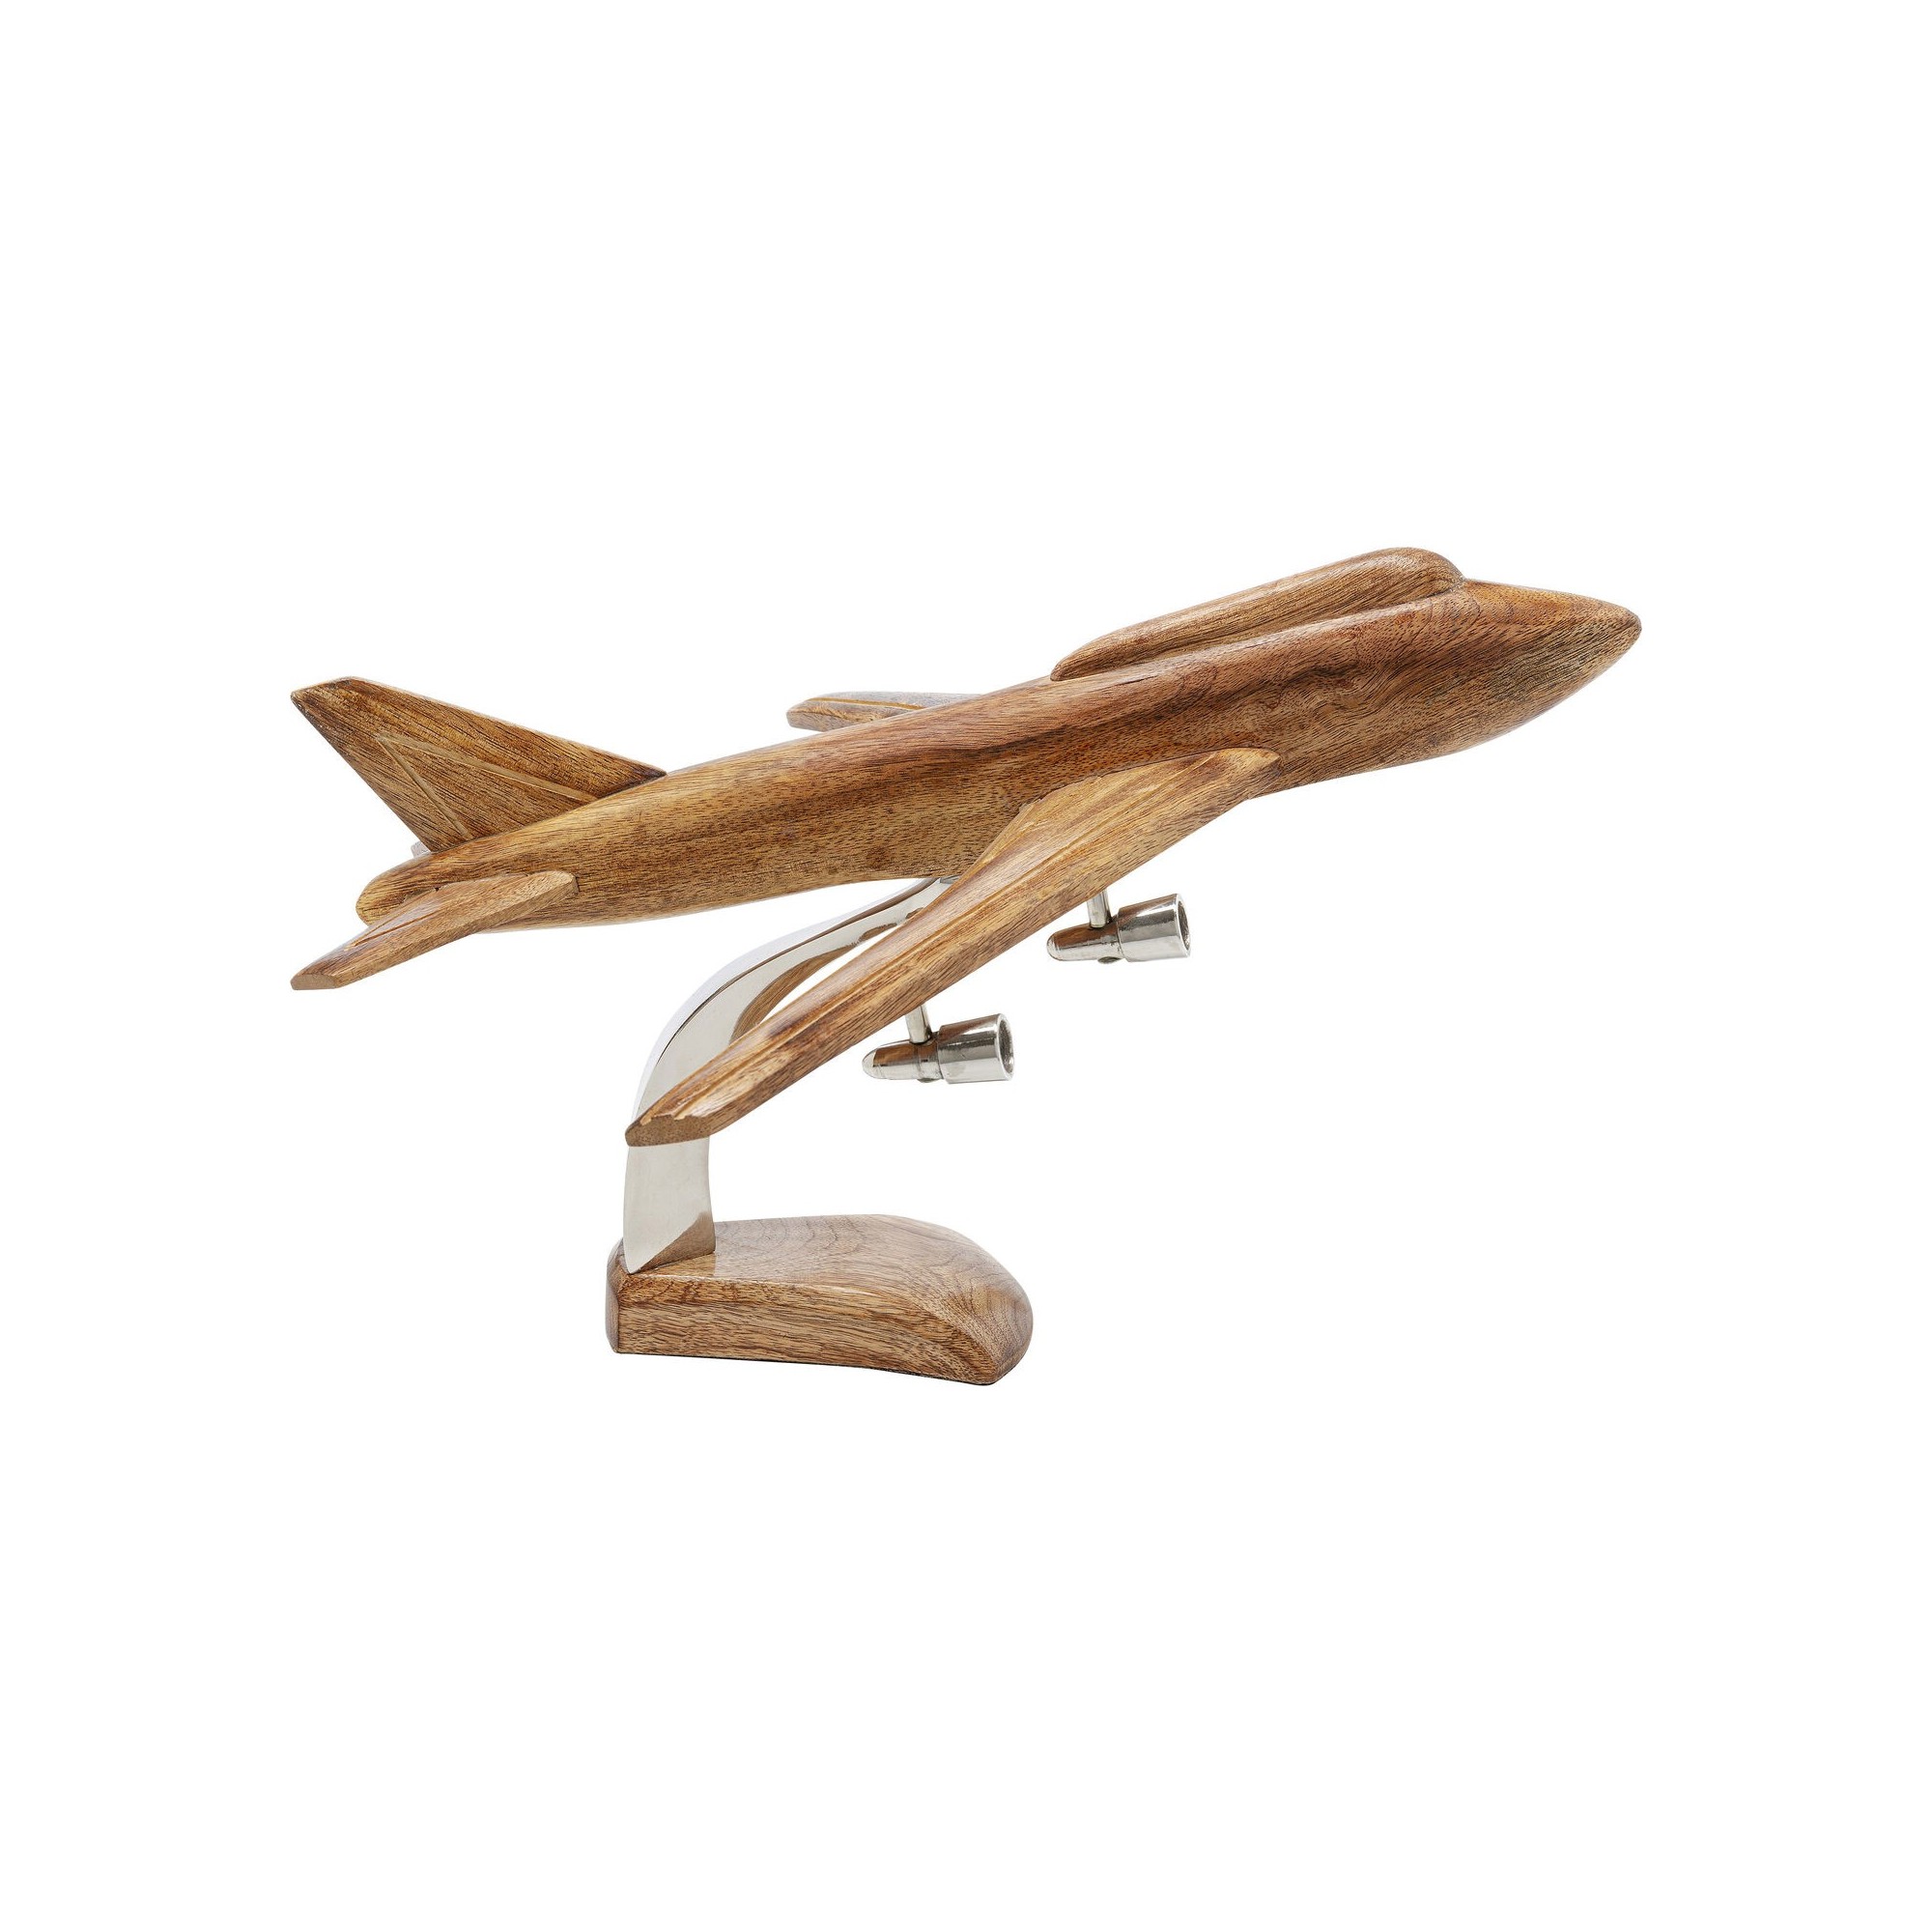 Objet décoratif Wood Plane 25cm